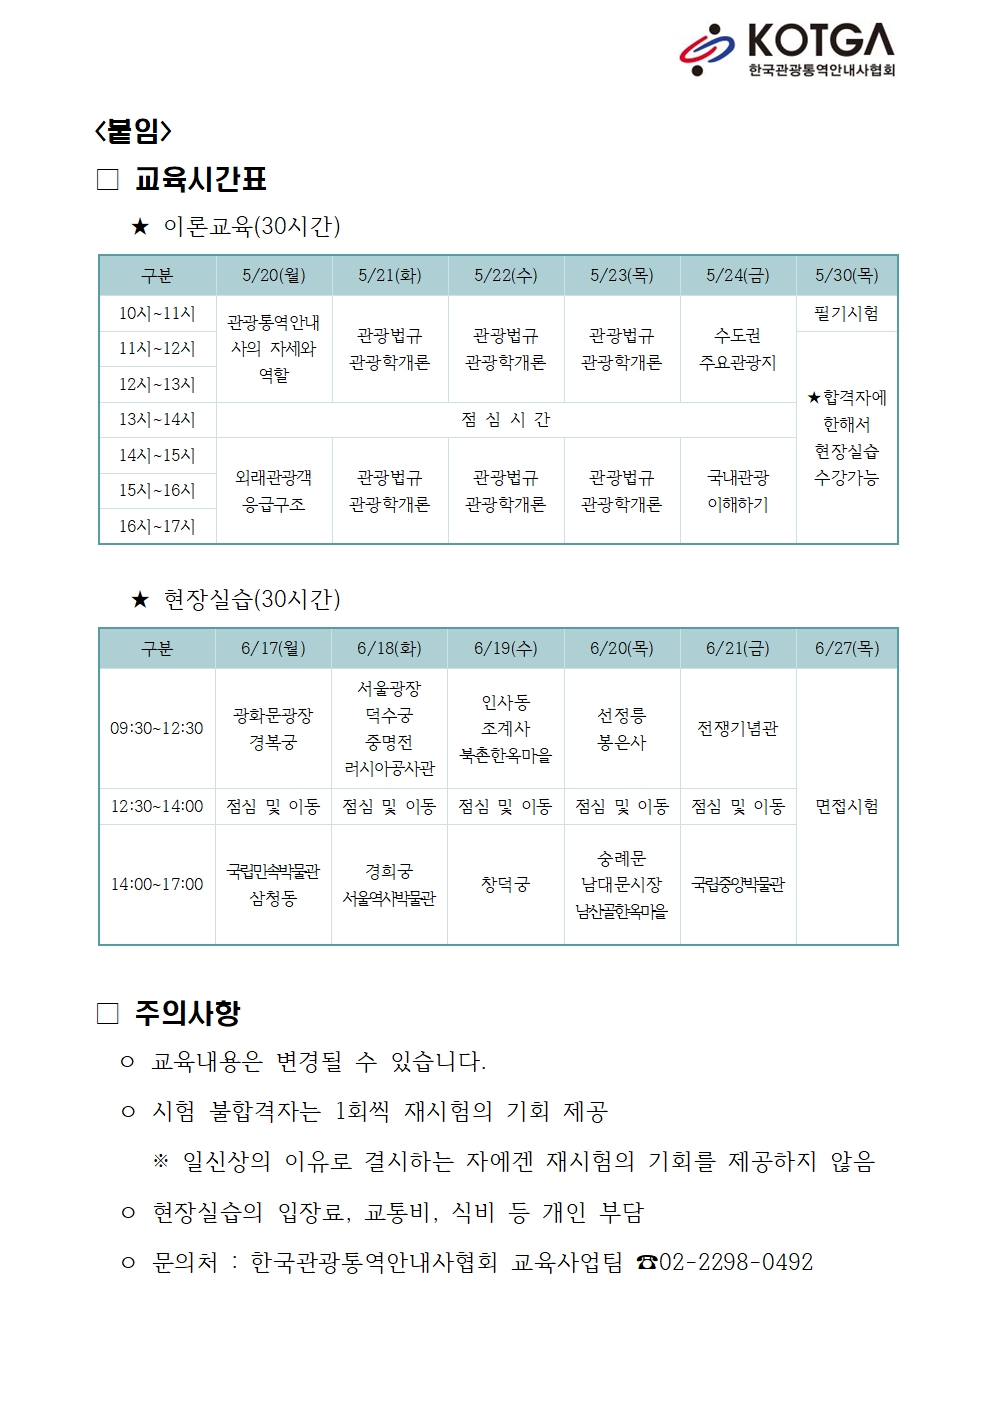 (붙임)이론교육/현장실습 교육시간표 - KOTGA 한국관광통역안내사협회